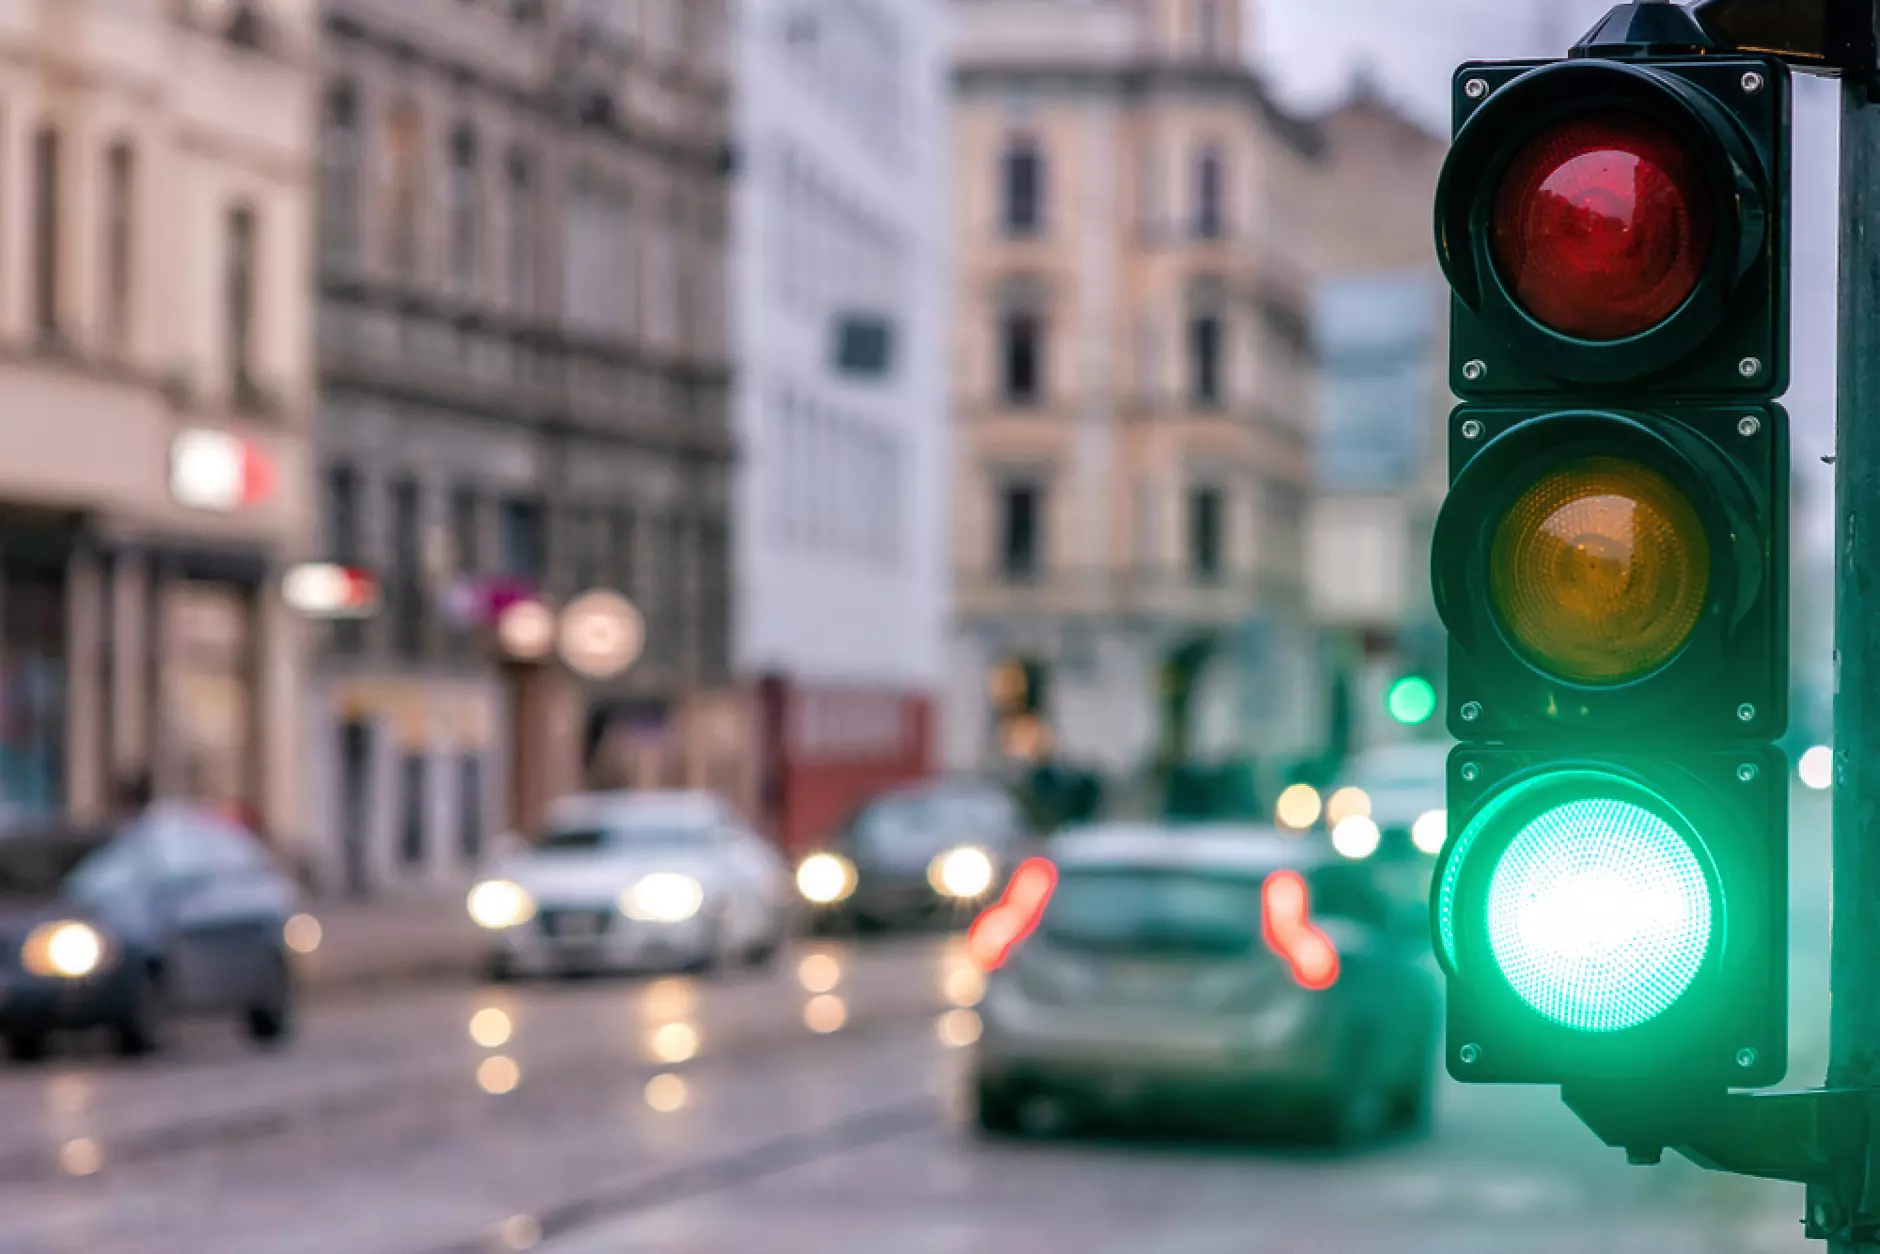 125 умни светофара ще намаляват задръстванията в Кипър